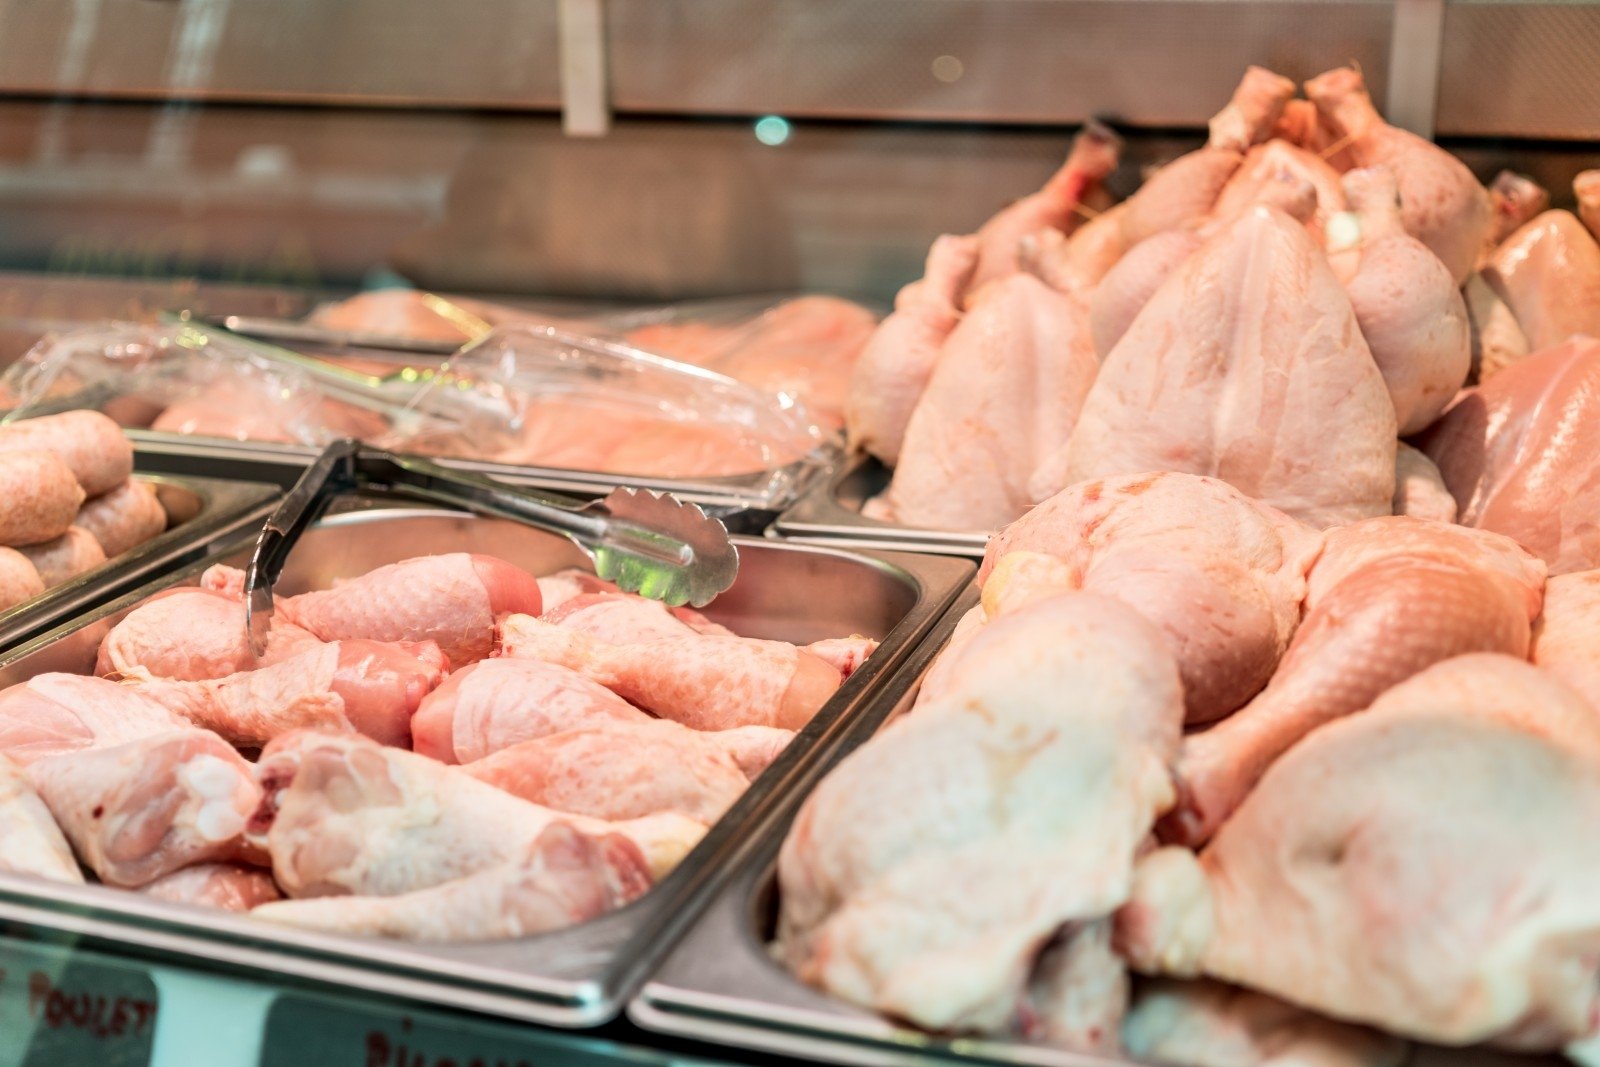 Покупатели смогут узнать, сколько в продуктах мяса птицы